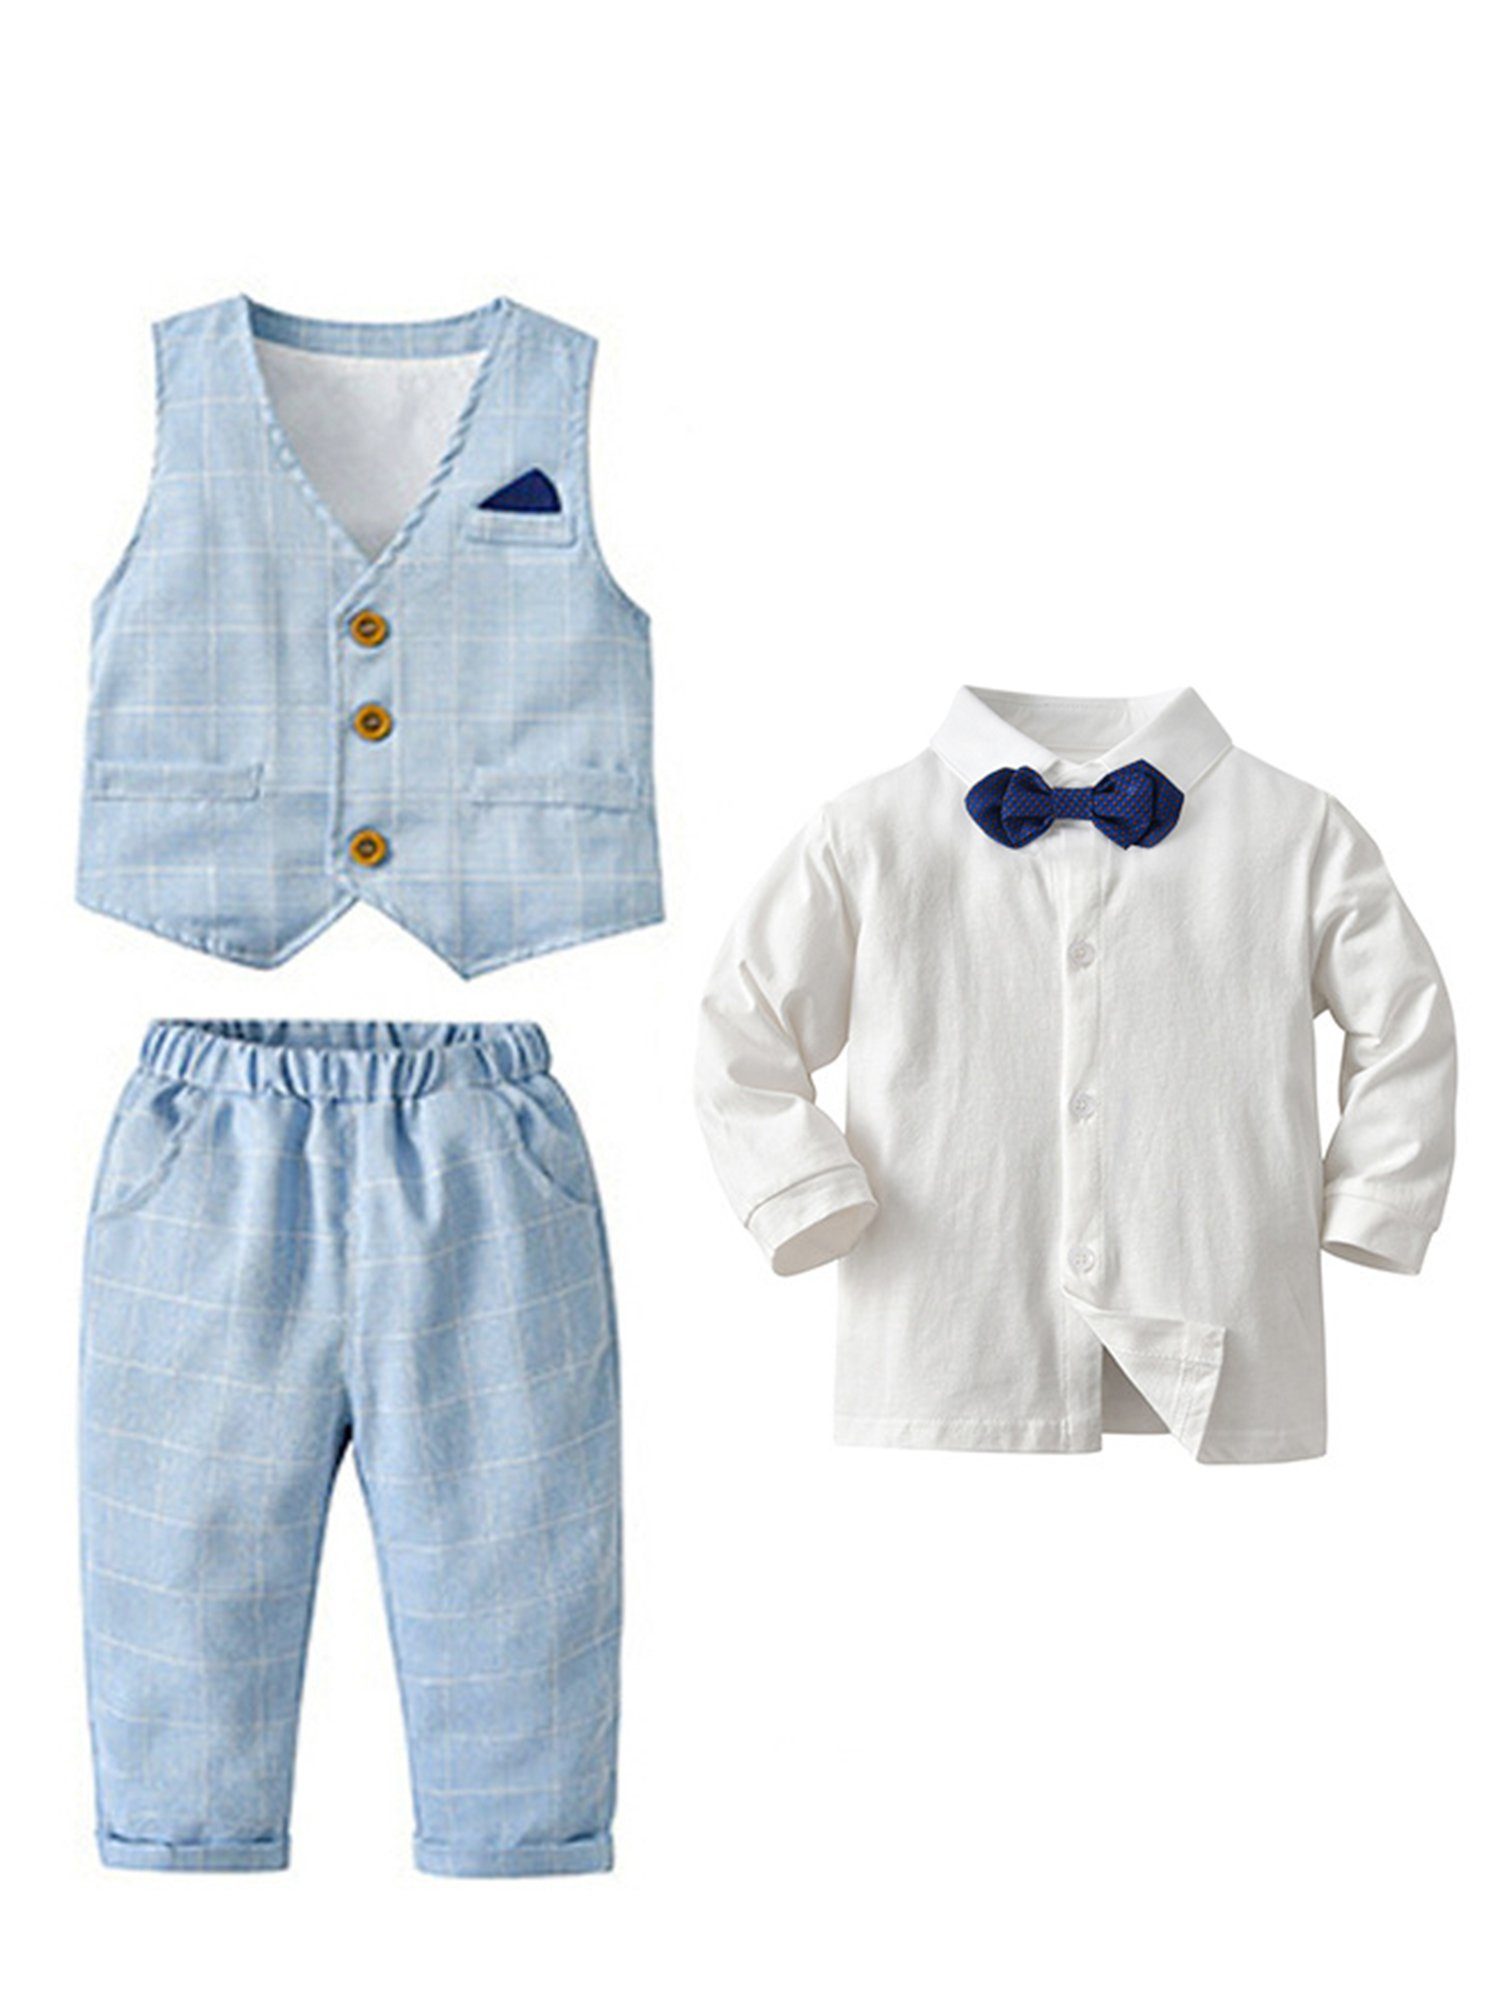 Lapastyle Anzug Baby Jungen Langarm-Shirt, Weste, Hose, dreiteiliges Set,  Hochwertige Stoffe bringen ein angenehmes Gefühl